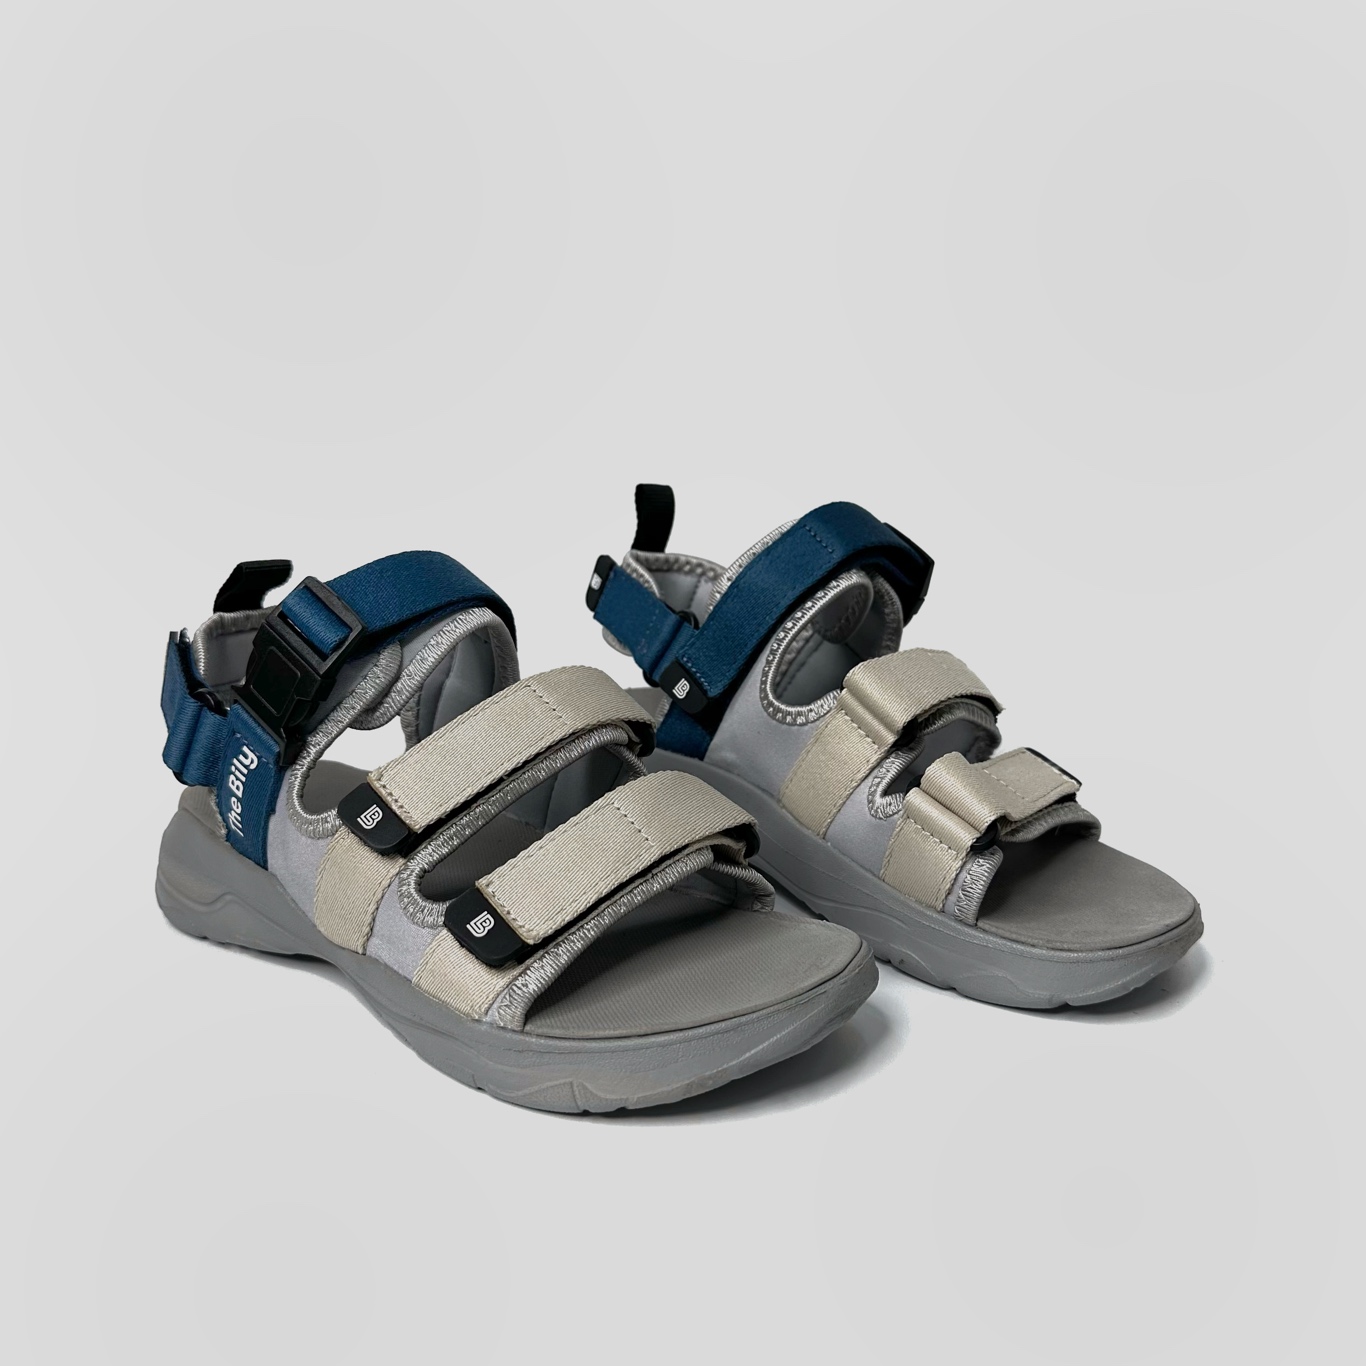 Giày Sandal Nam Nữ Unisex The BiLy Quai Ngang Dây Dù Đế IP Siêu Êm Nhẹ Đế Xám Màu Xanh Kem-BLDX08